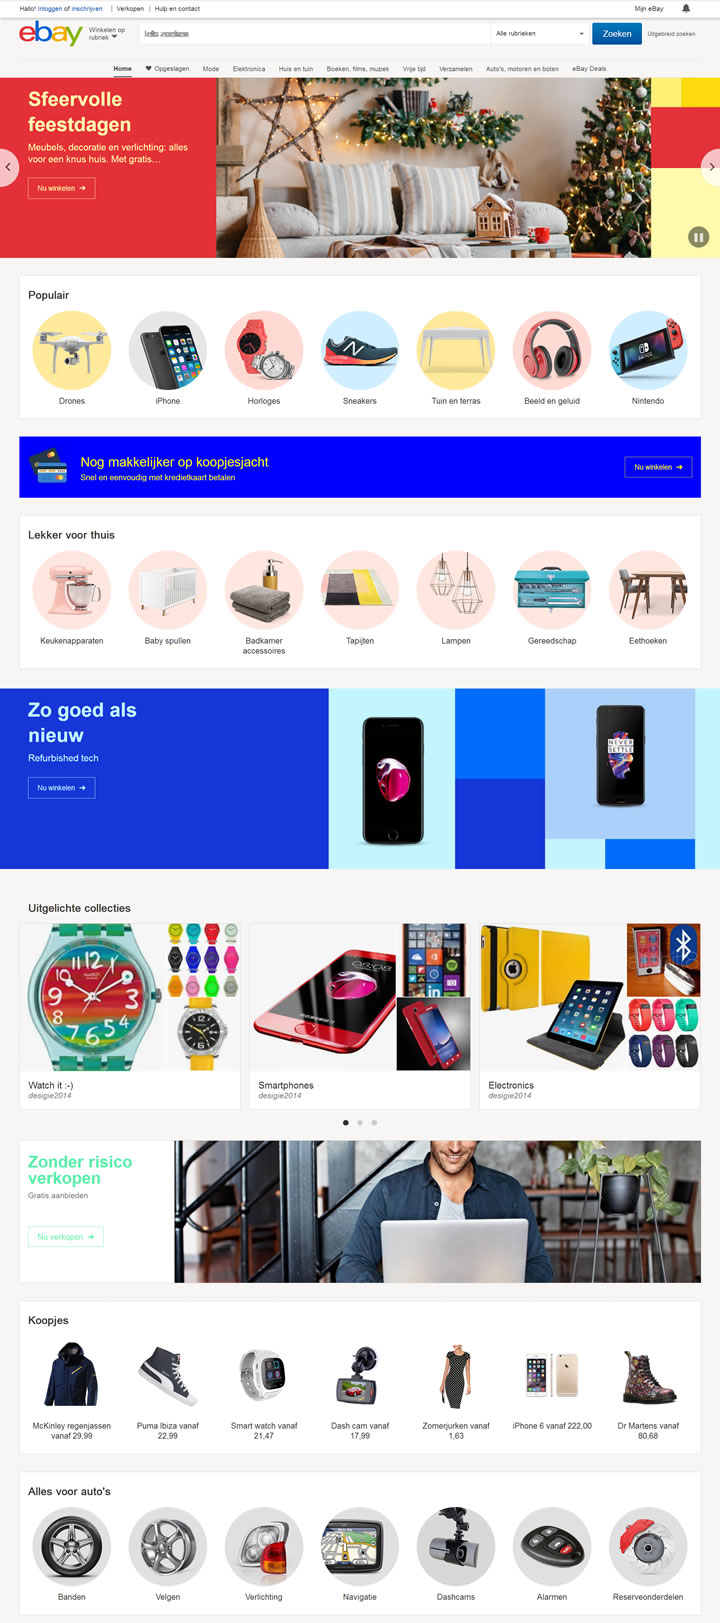 eBay荷兰购物网站：eBay.nl